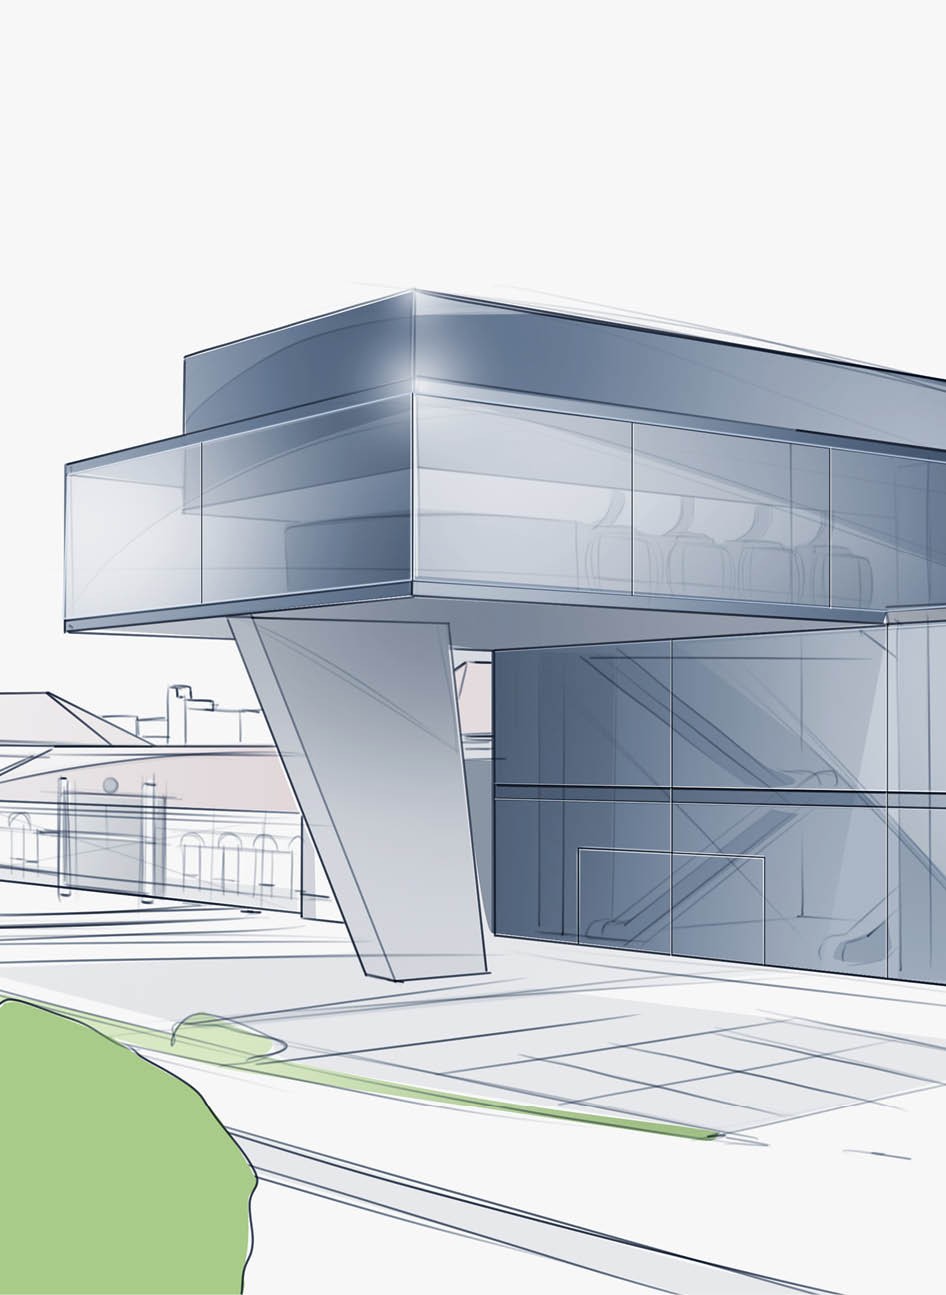 Architektur-Skizze einer Seilbahn-Station